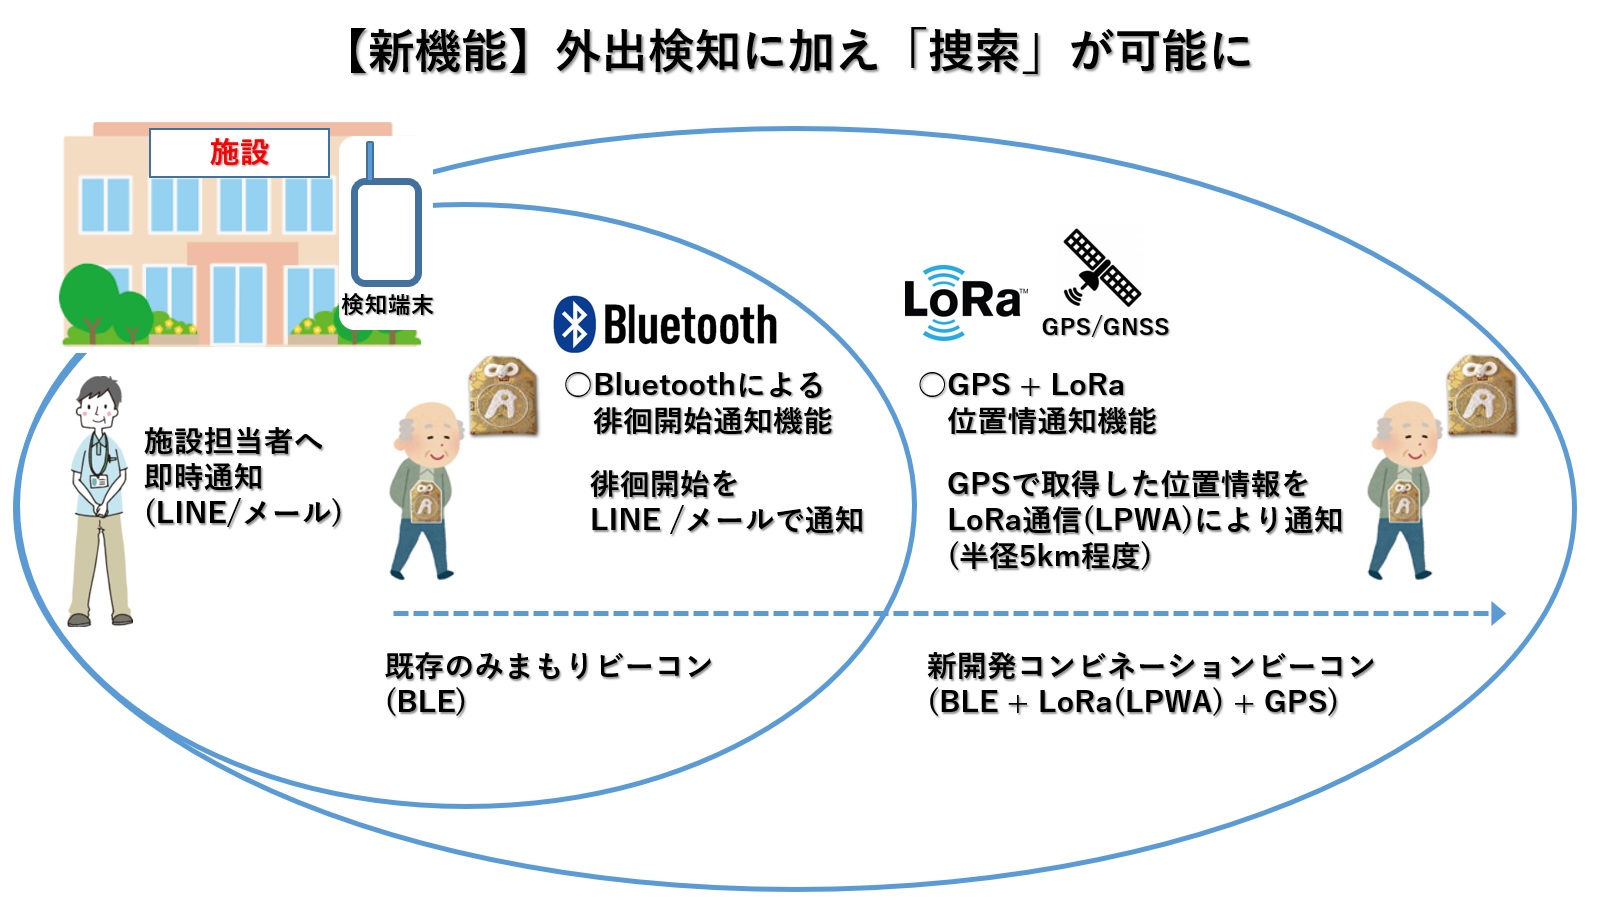 Off Line社 Bluetooth Lora Gps 搭載のコンビネーション ビーコン による直径１０キロの長距離みまもりサービス実験に成功 オフラインジャパン株式会社のプレスリリース